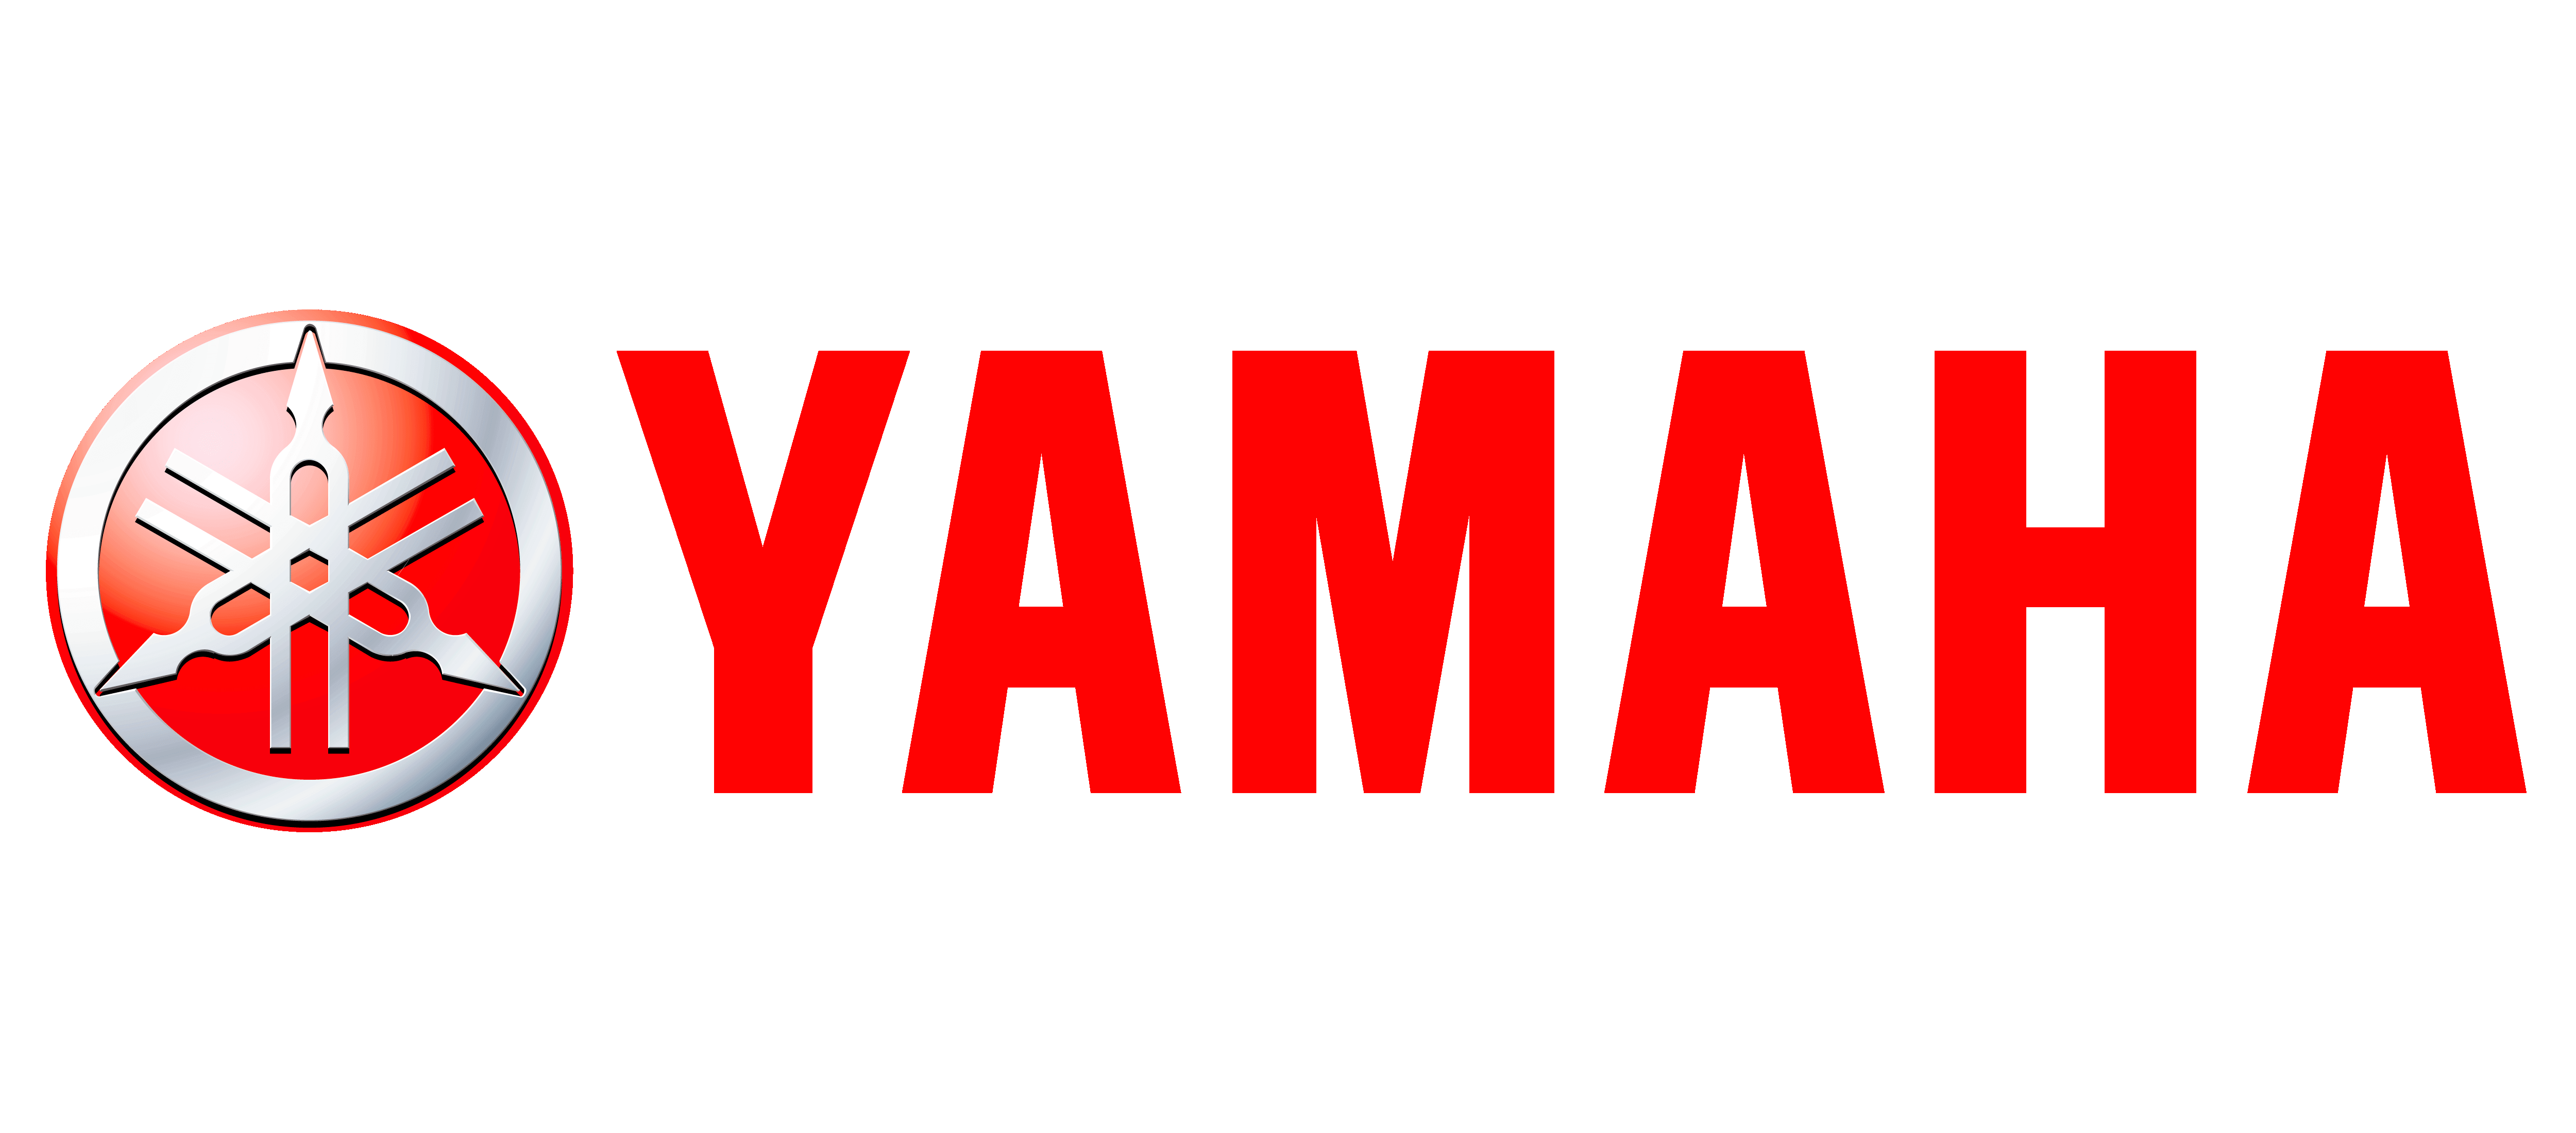 Yamalube Logo - Yamaha motorcycle logo history and Meaning, bike emblem